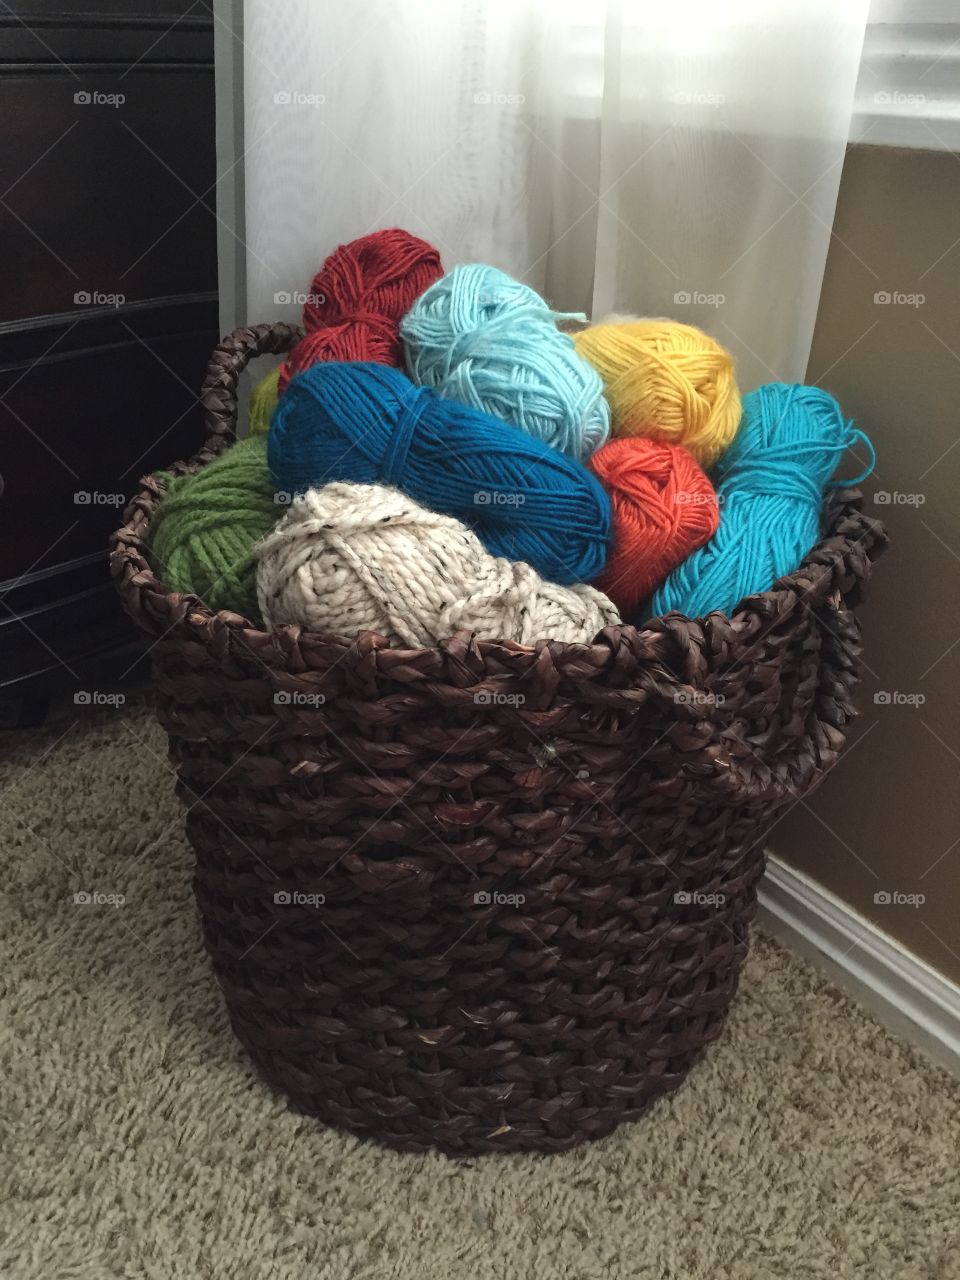 Basket full of yarn. A basket full of colorful yarn